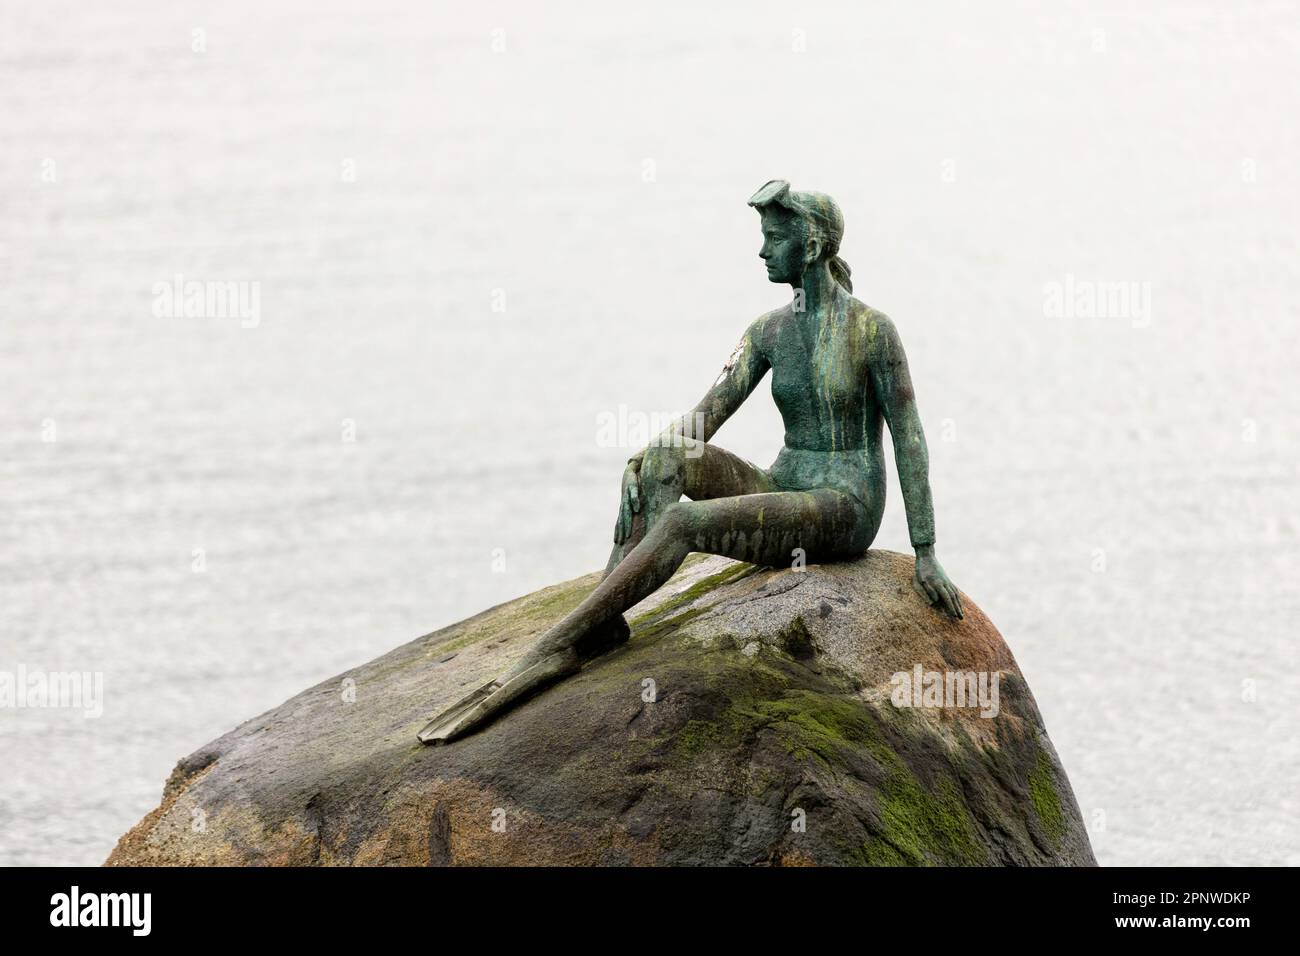 „Girl in a Wetsuit“, eine lebensgroße Bronzeskulptur aus dem Jahr 1972 des Künstlers Elek Imredy, ist auf einem Felsen im Wasser vor Stanley Park, Vancouver, Kanada, zu sehen. Stockfoto